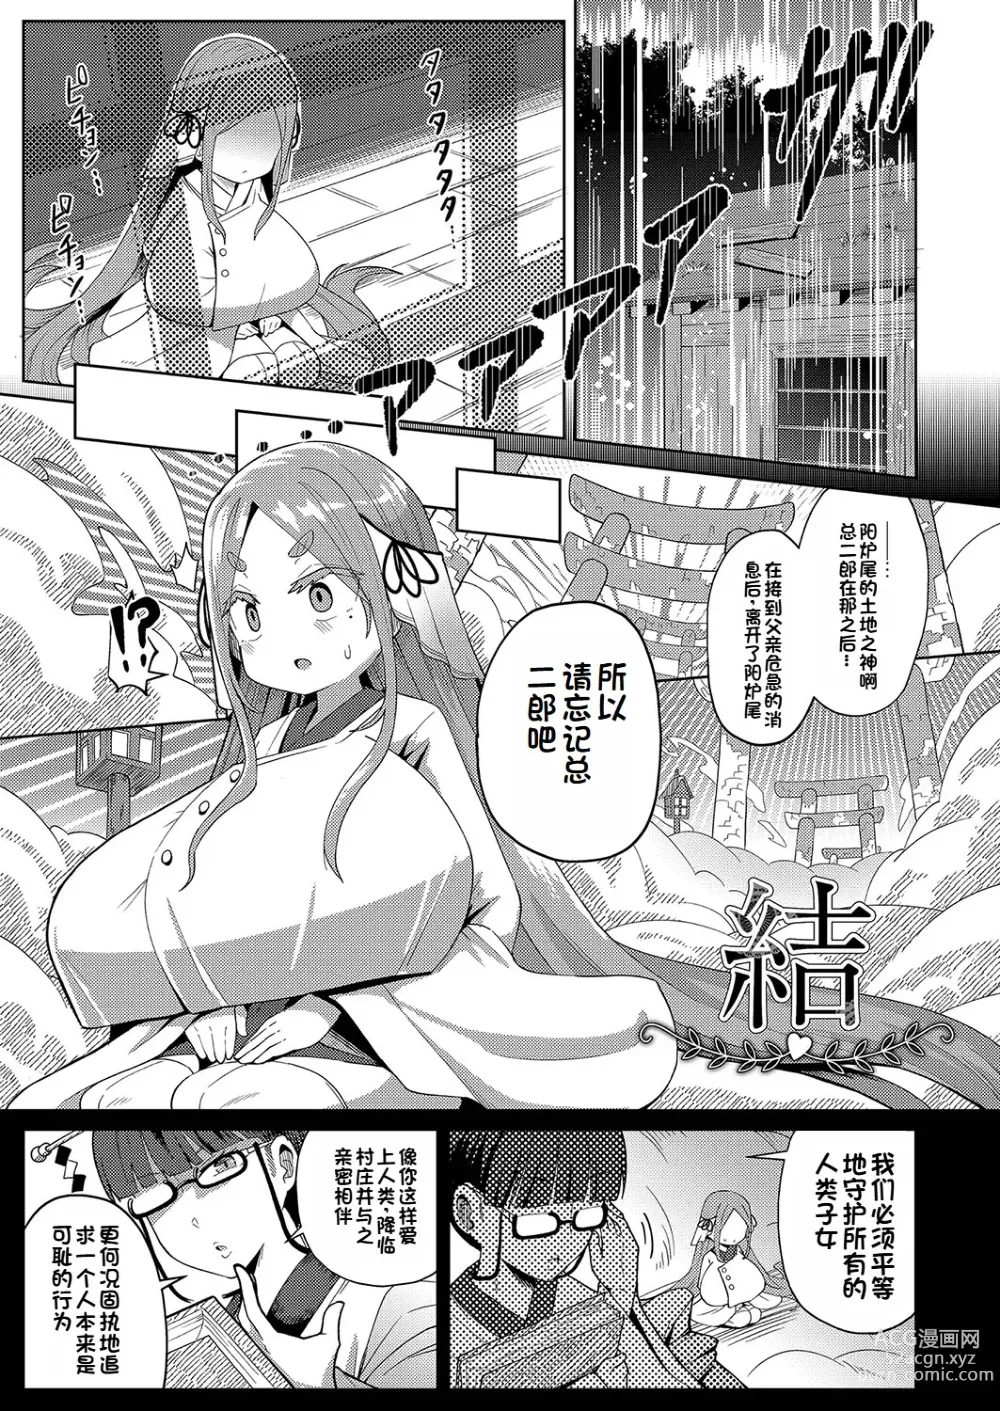 Page 1 of manga Yui